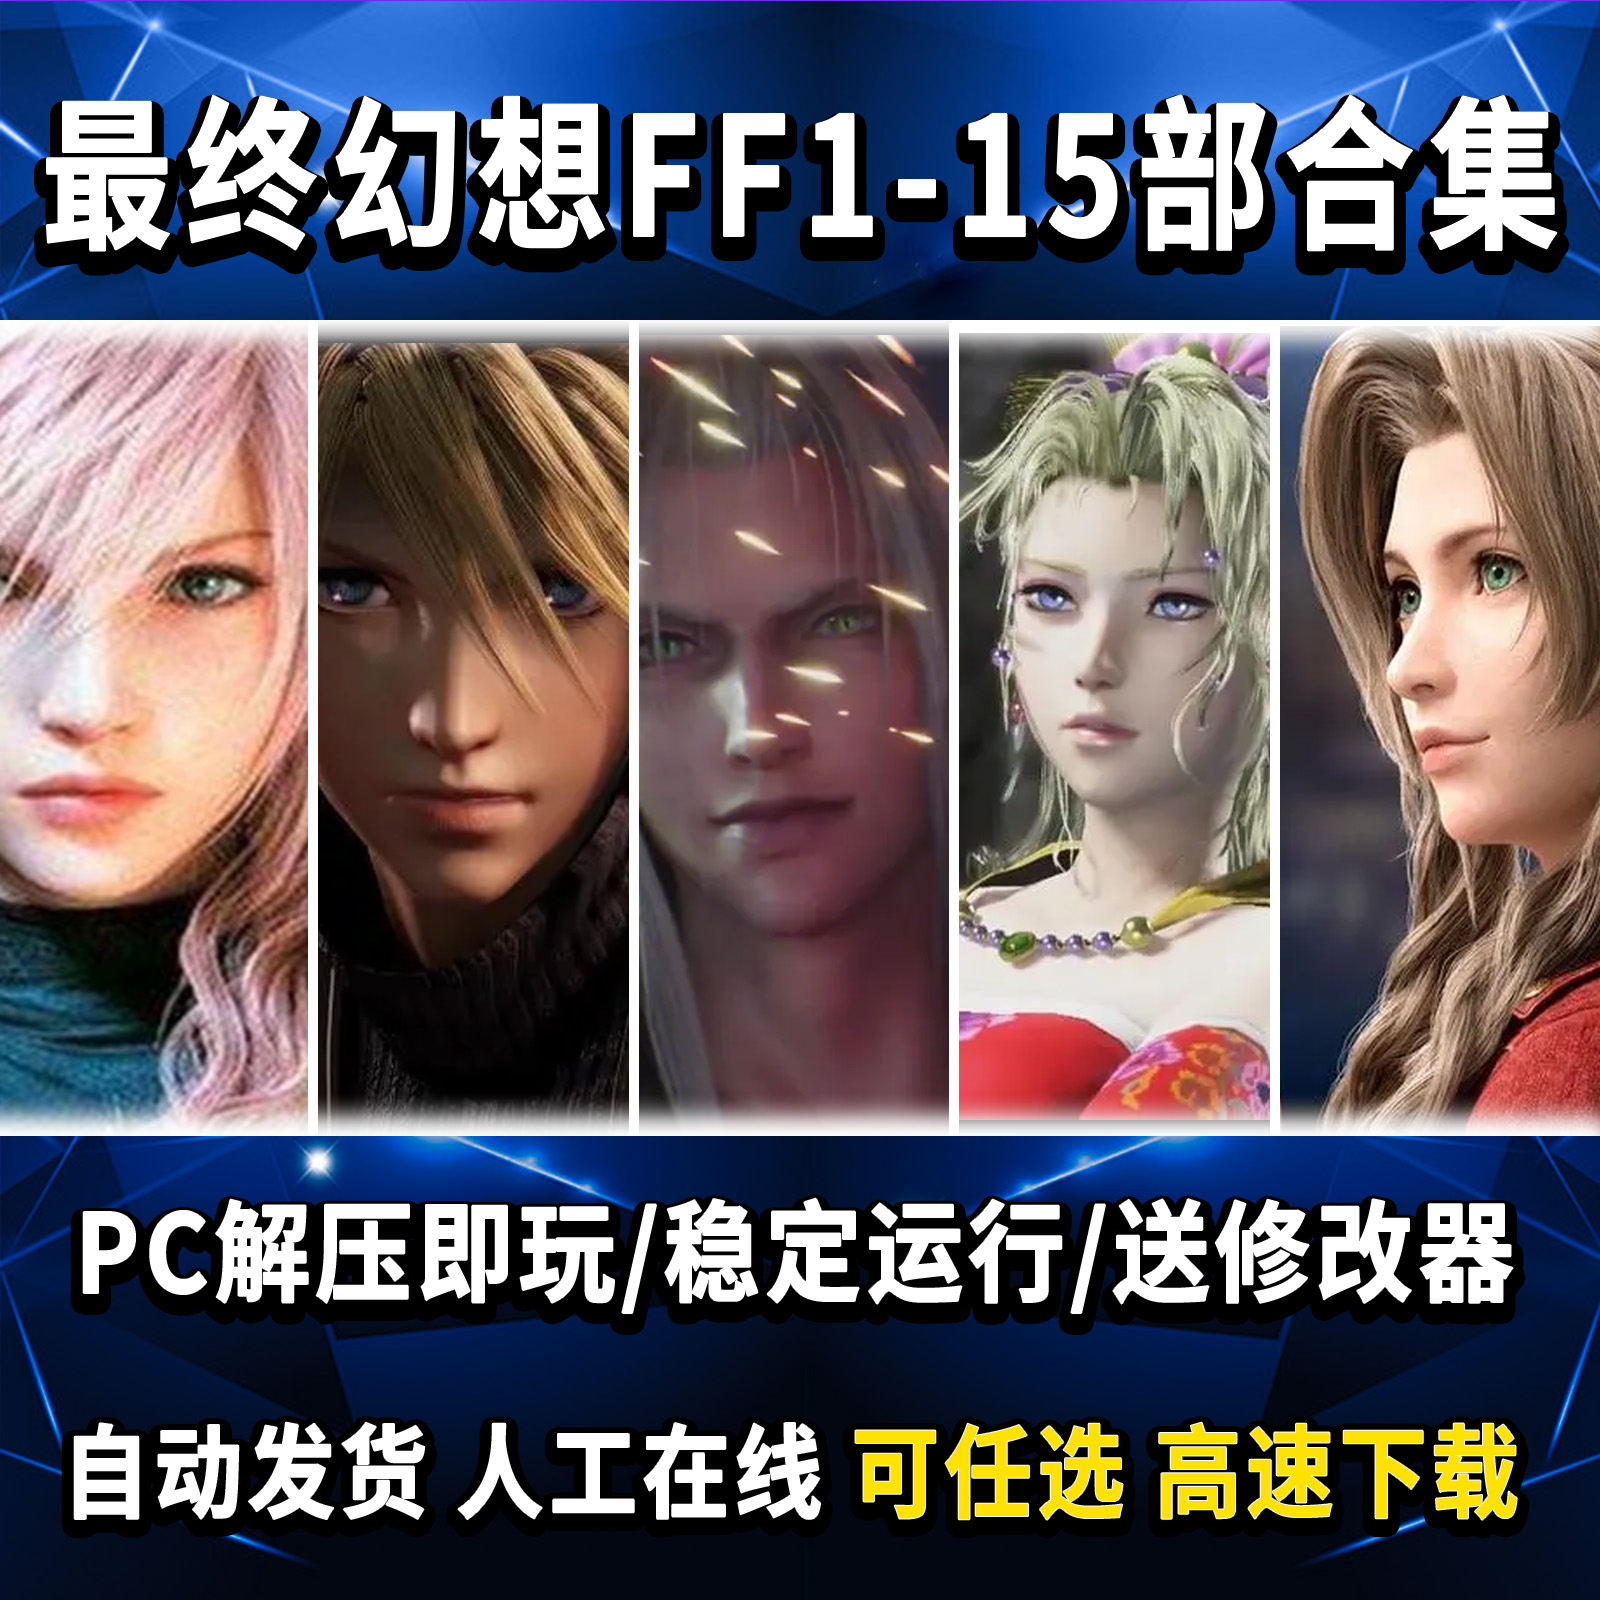 最终幻想1-15合集 起源 PC解压即玩送修改器 PC单机游戏免Steam